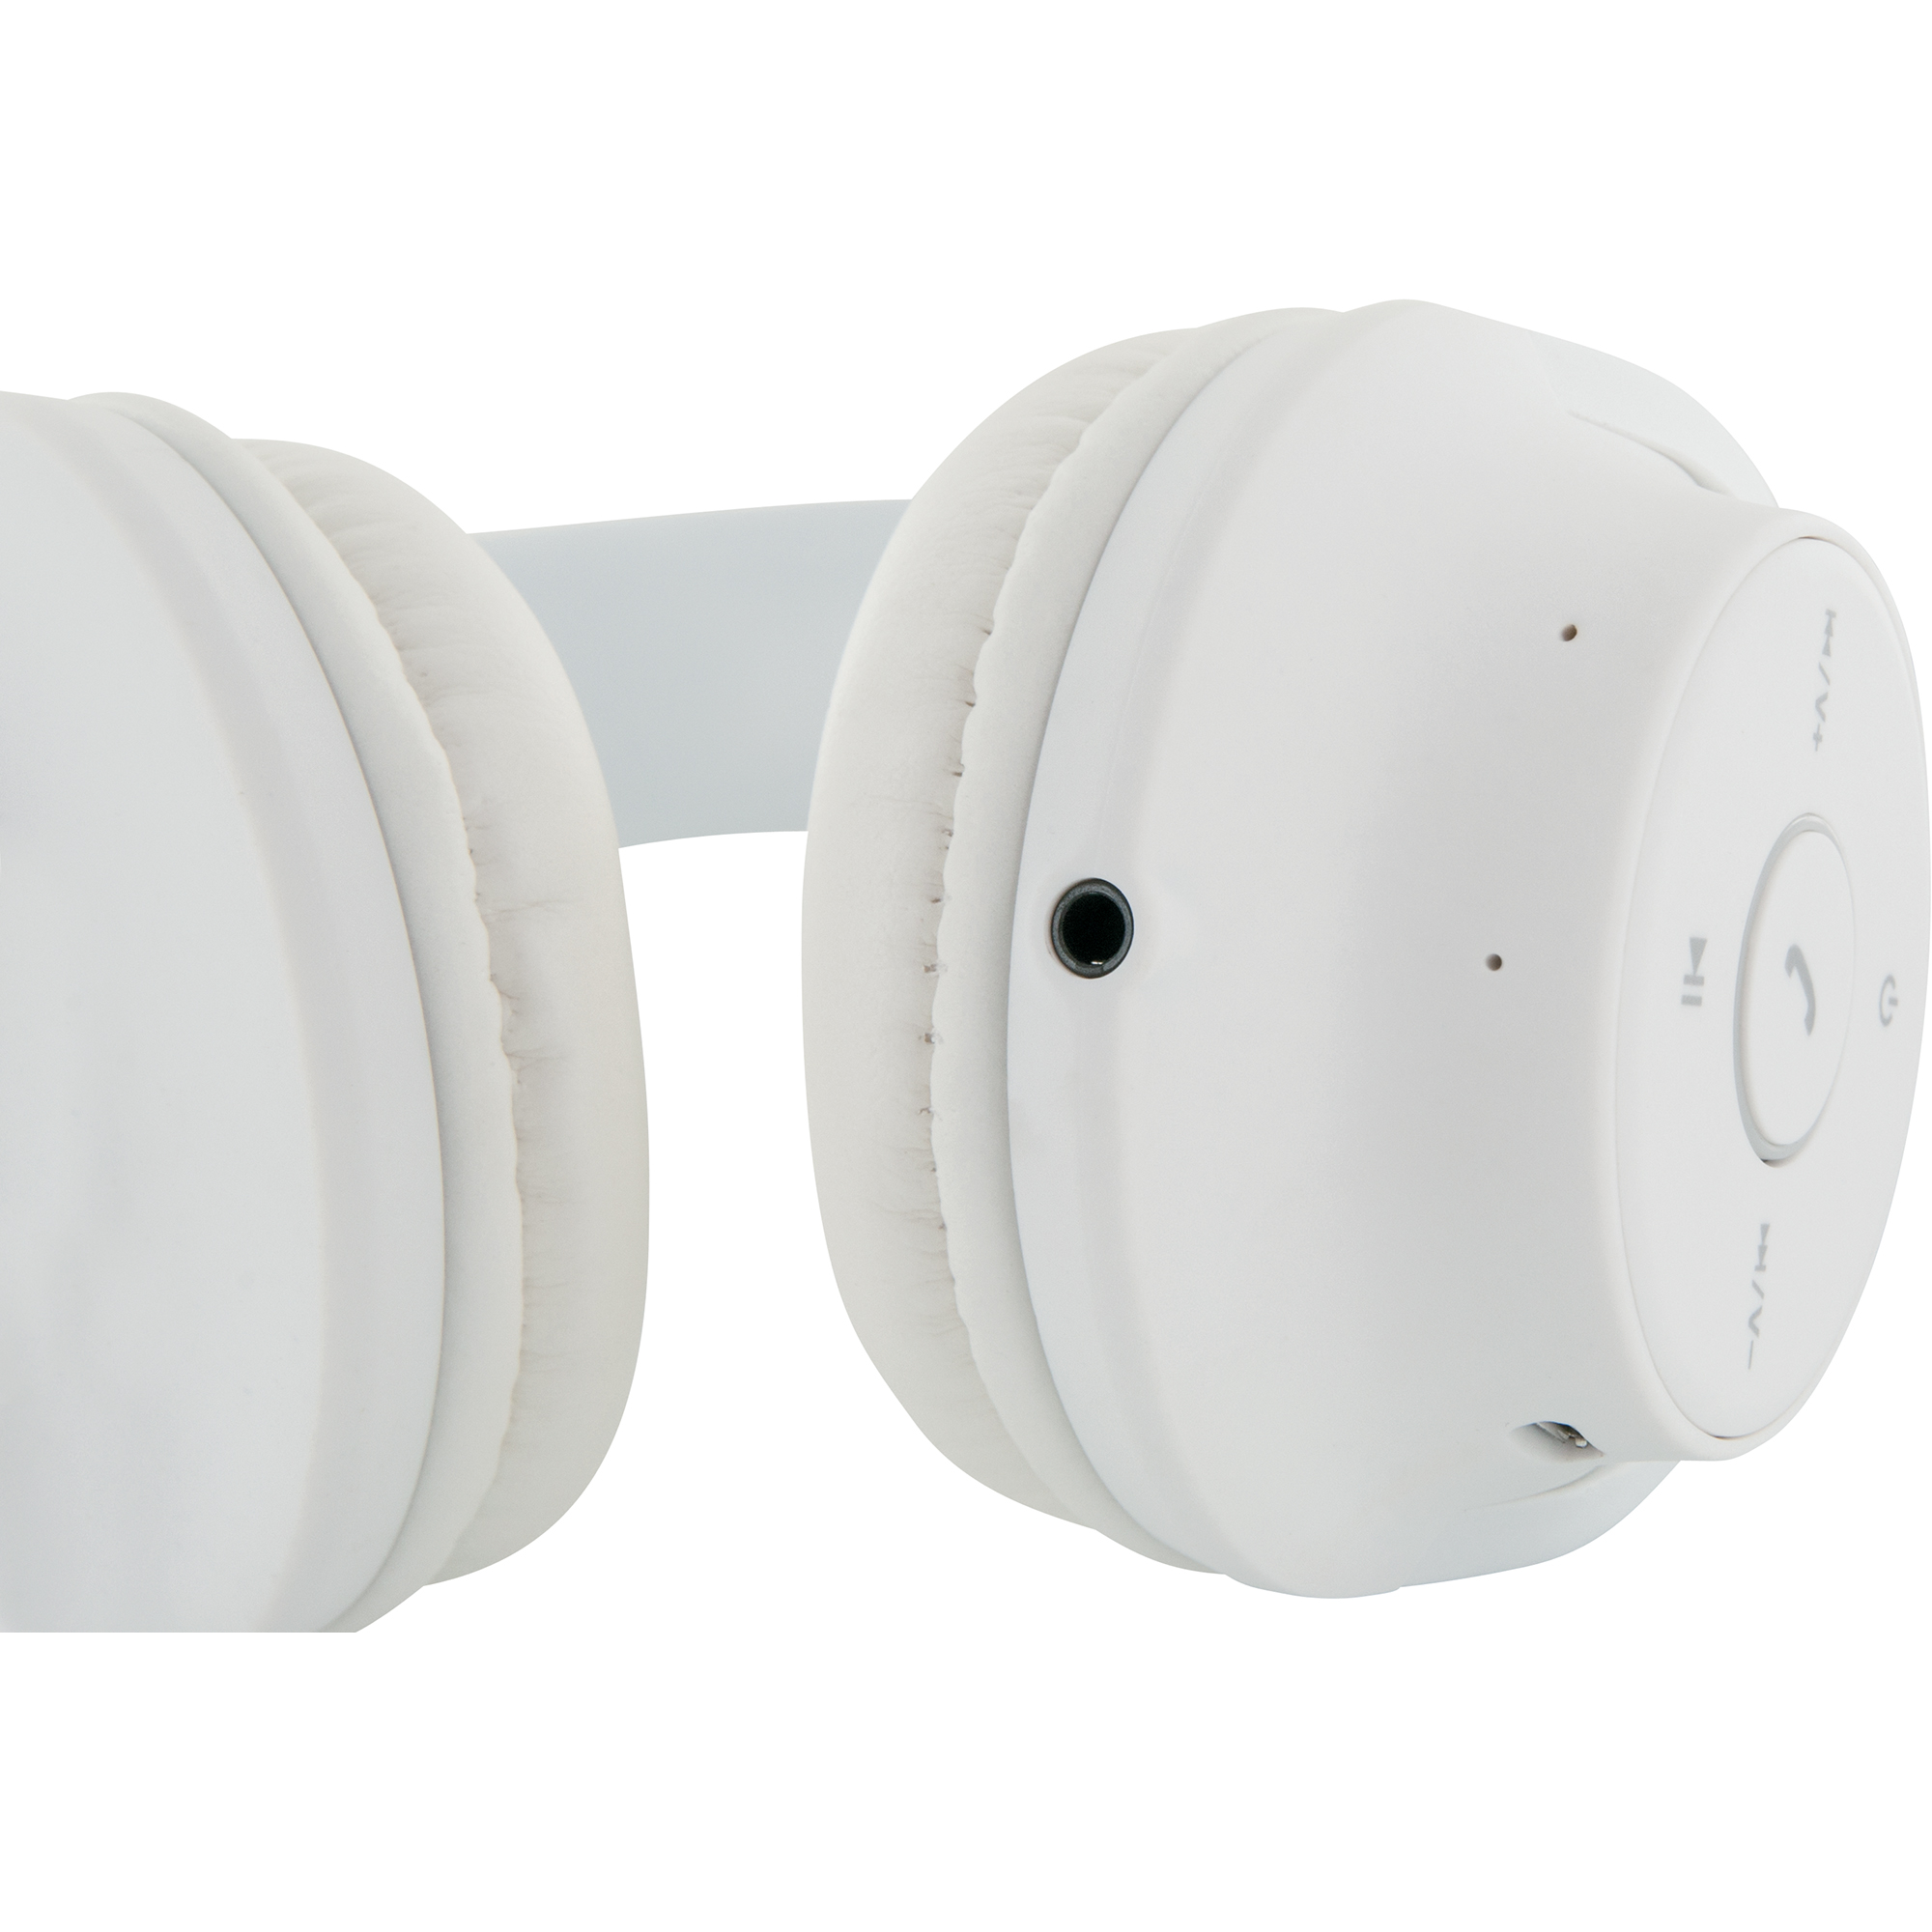 Bluetooth On-Ear-Kopfhörer mit Mikrofon + product picture